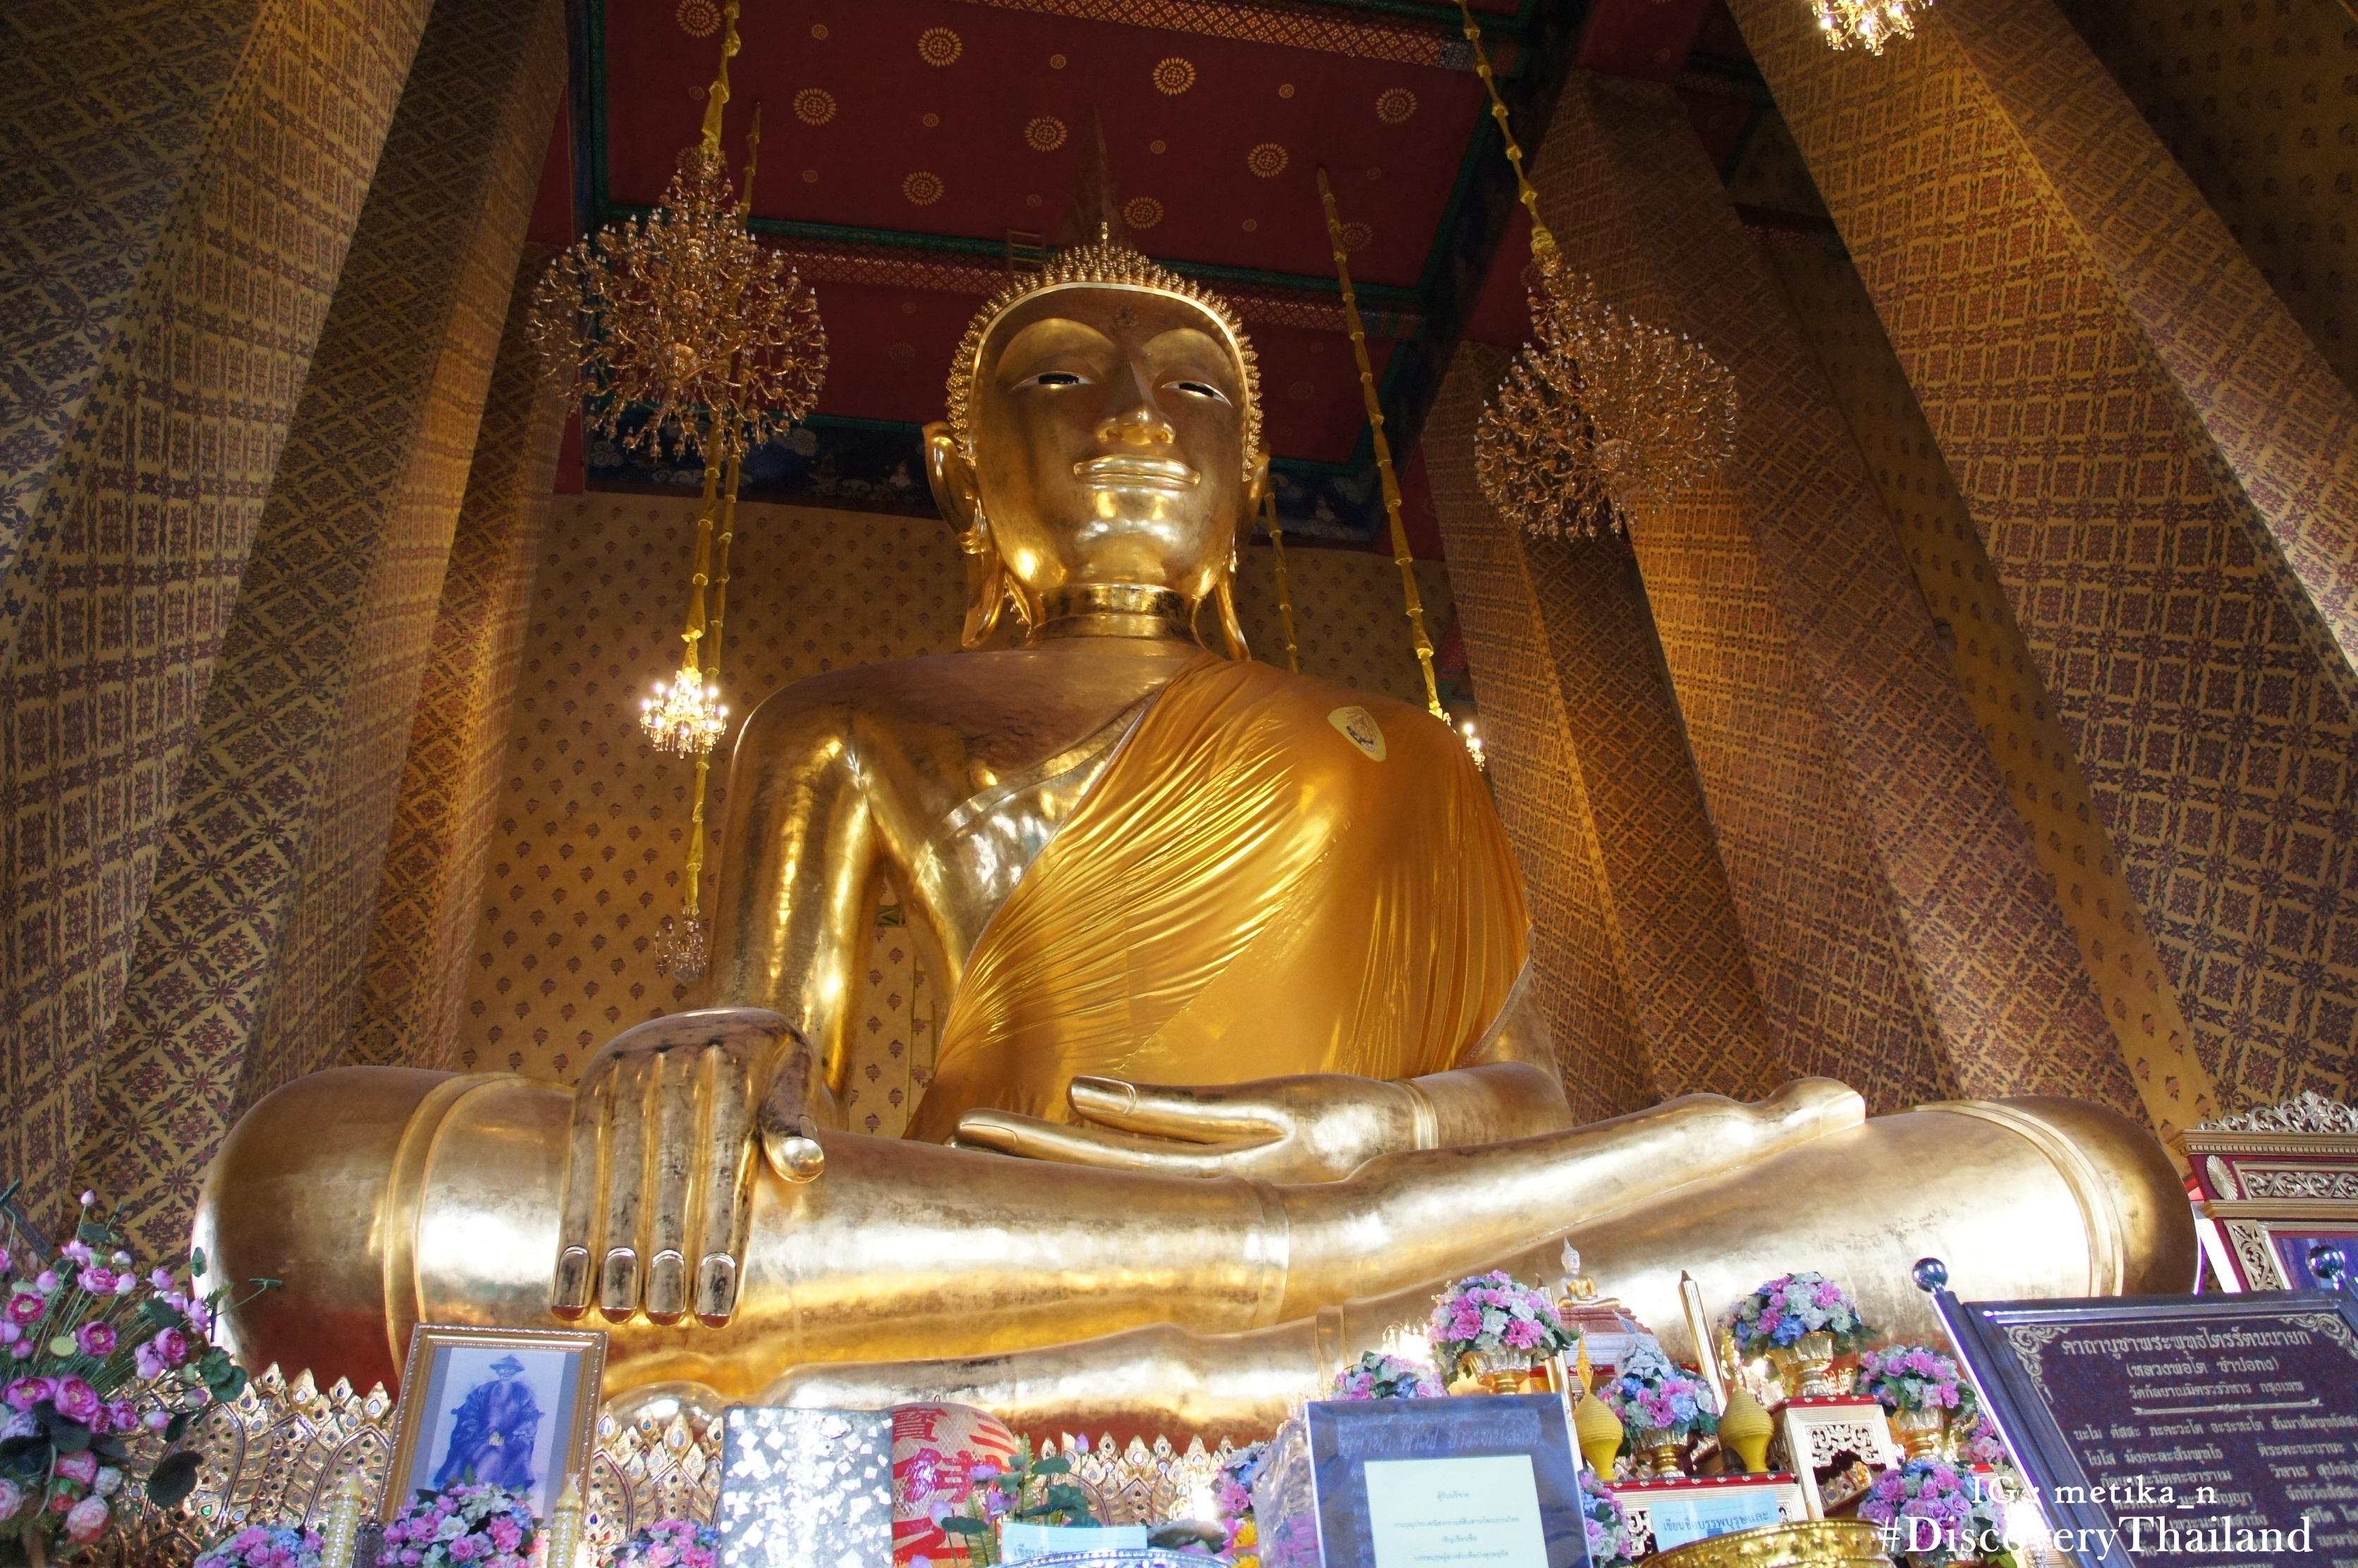 Cover image of this place Wat Kalayanamitr Varamahavihara